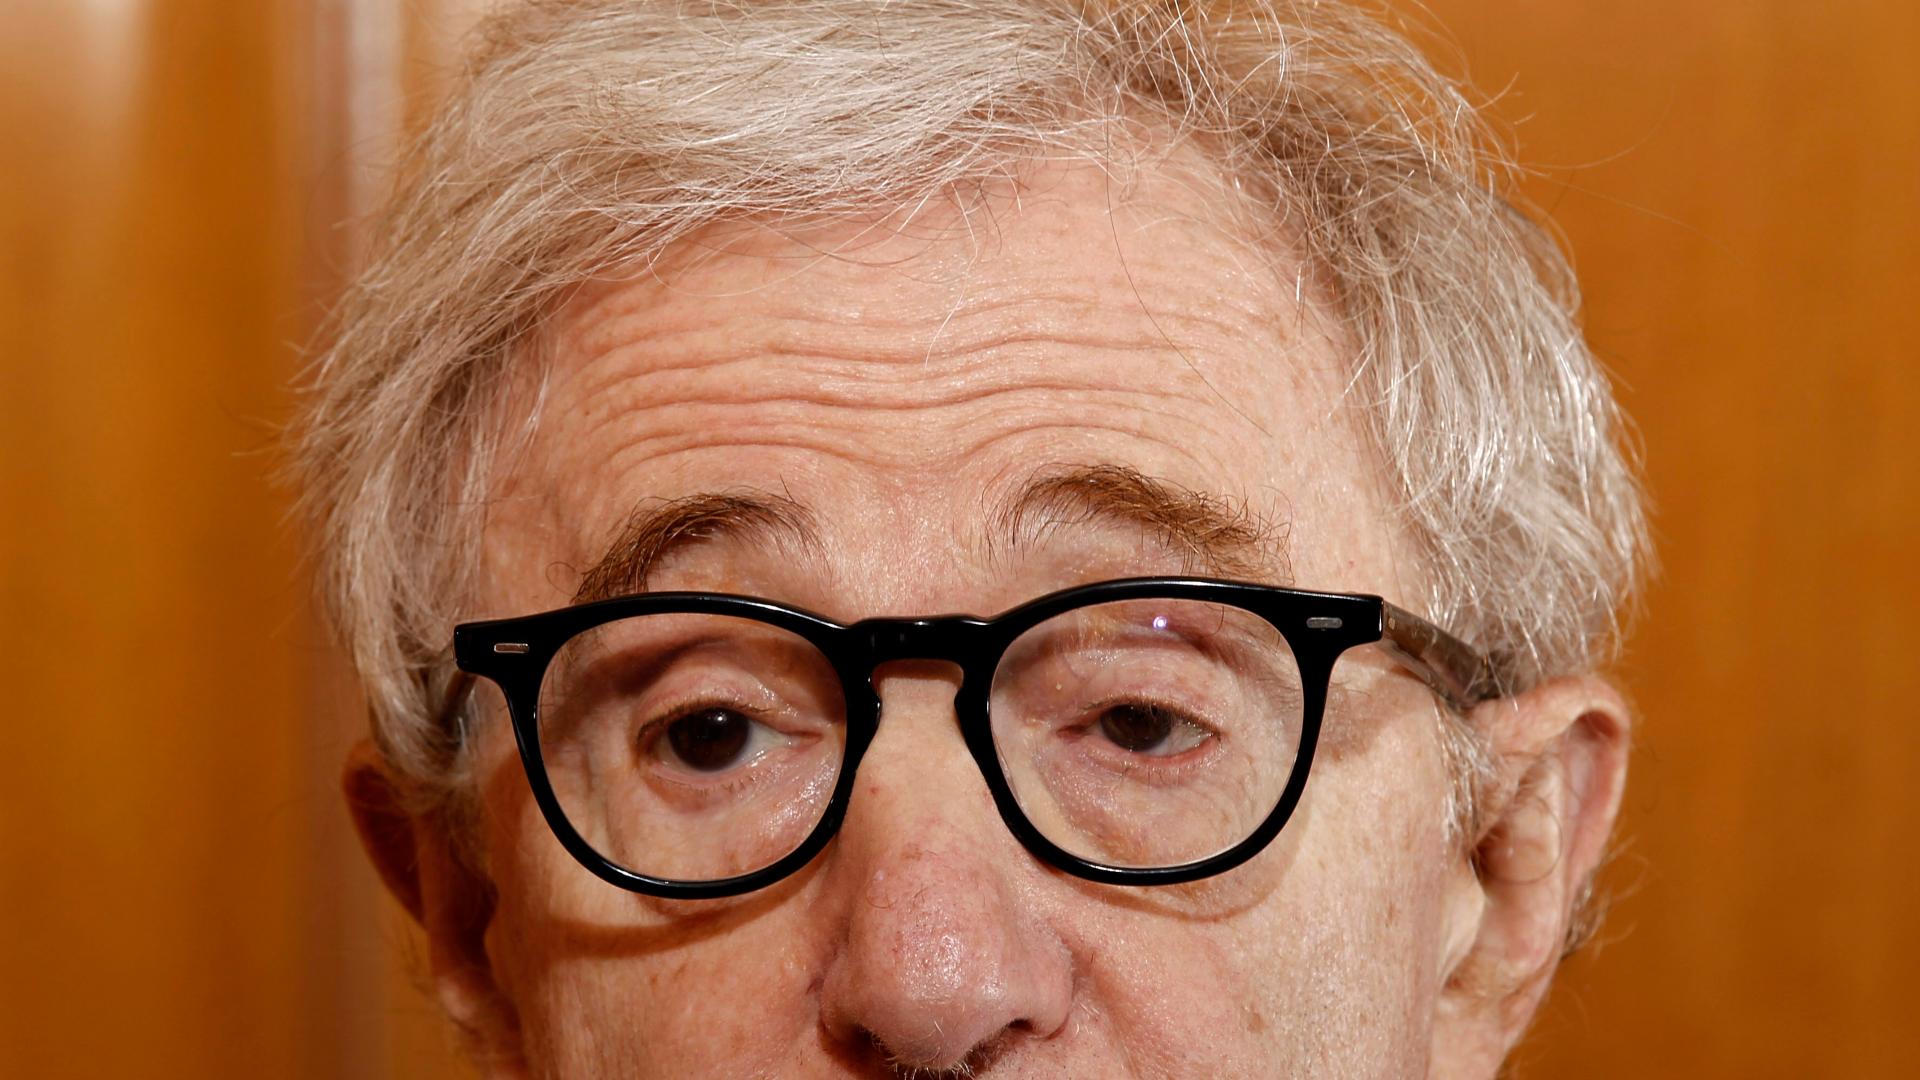 Alianza sí publicará las memorias de Woody Allen